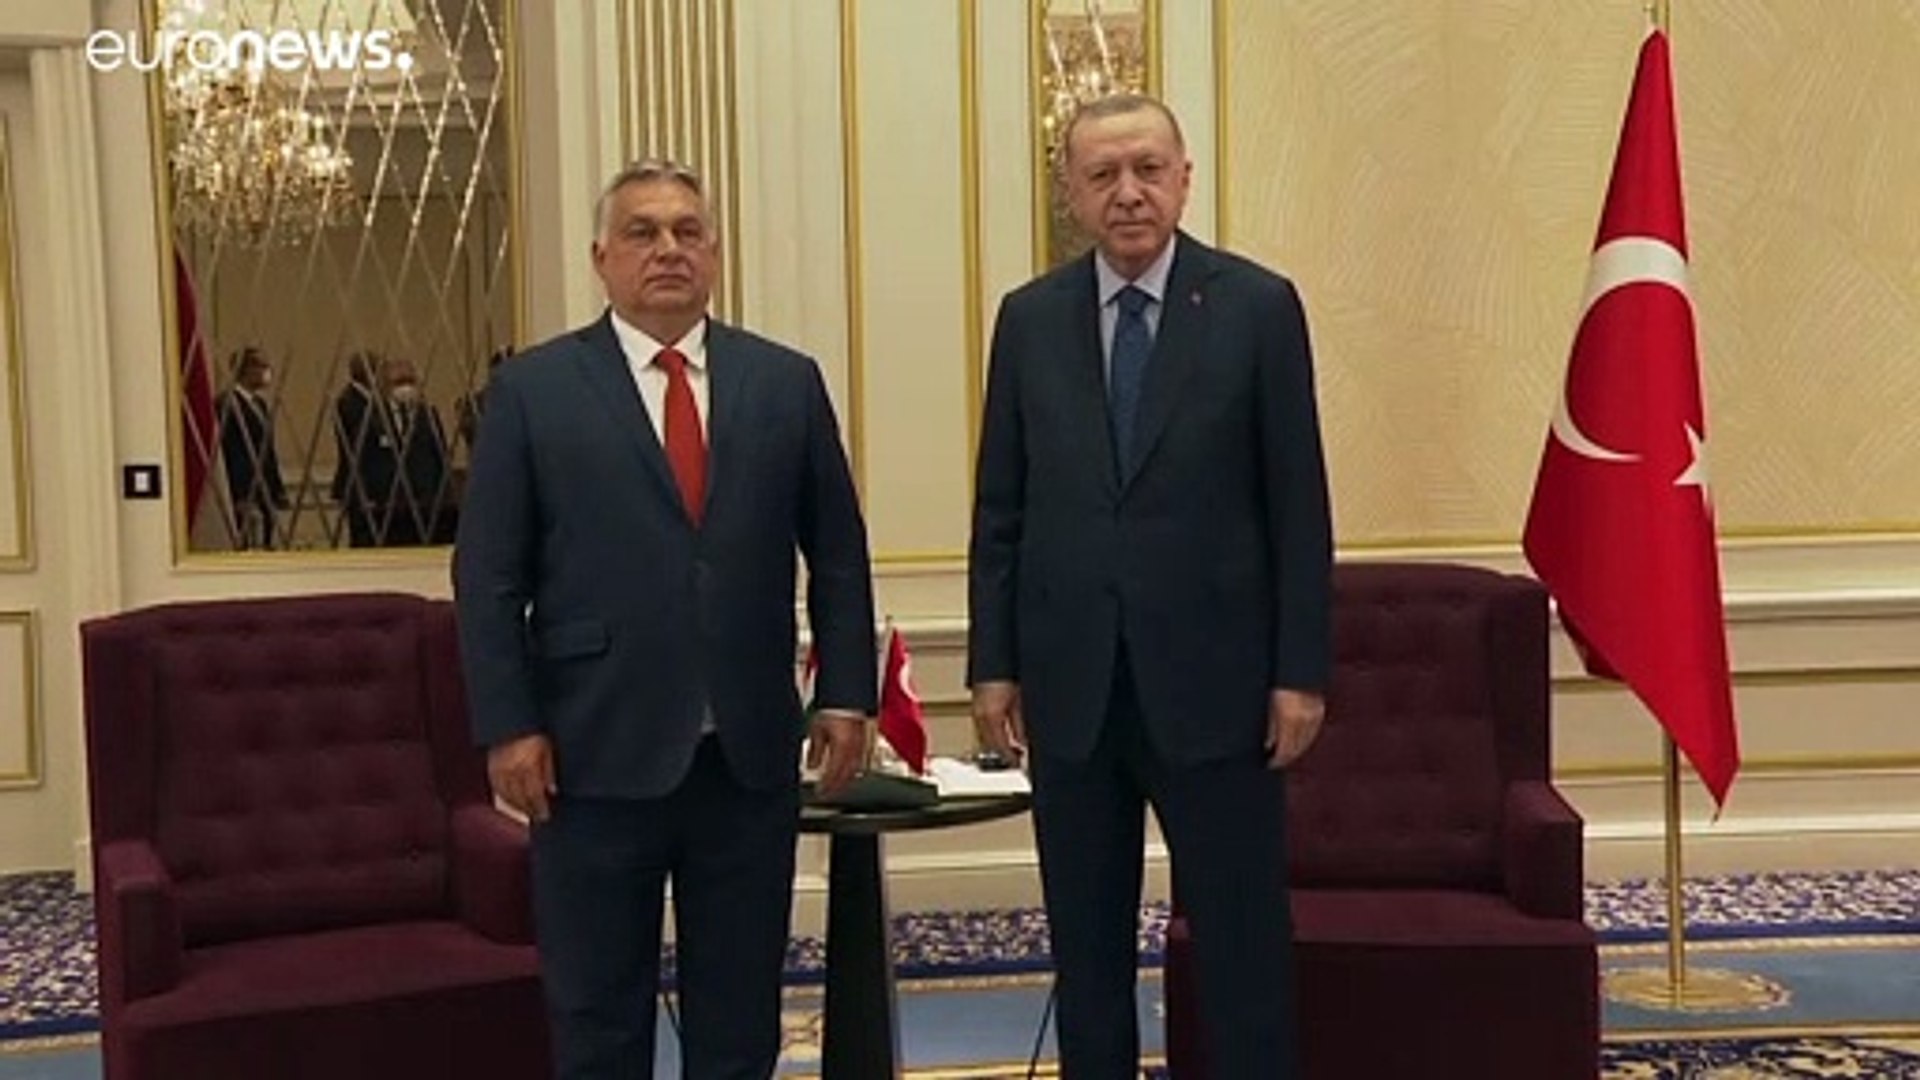 NATO-csúcs: katonai együttműködésről is tárgyalt Orbán Viktor a török elnökkel